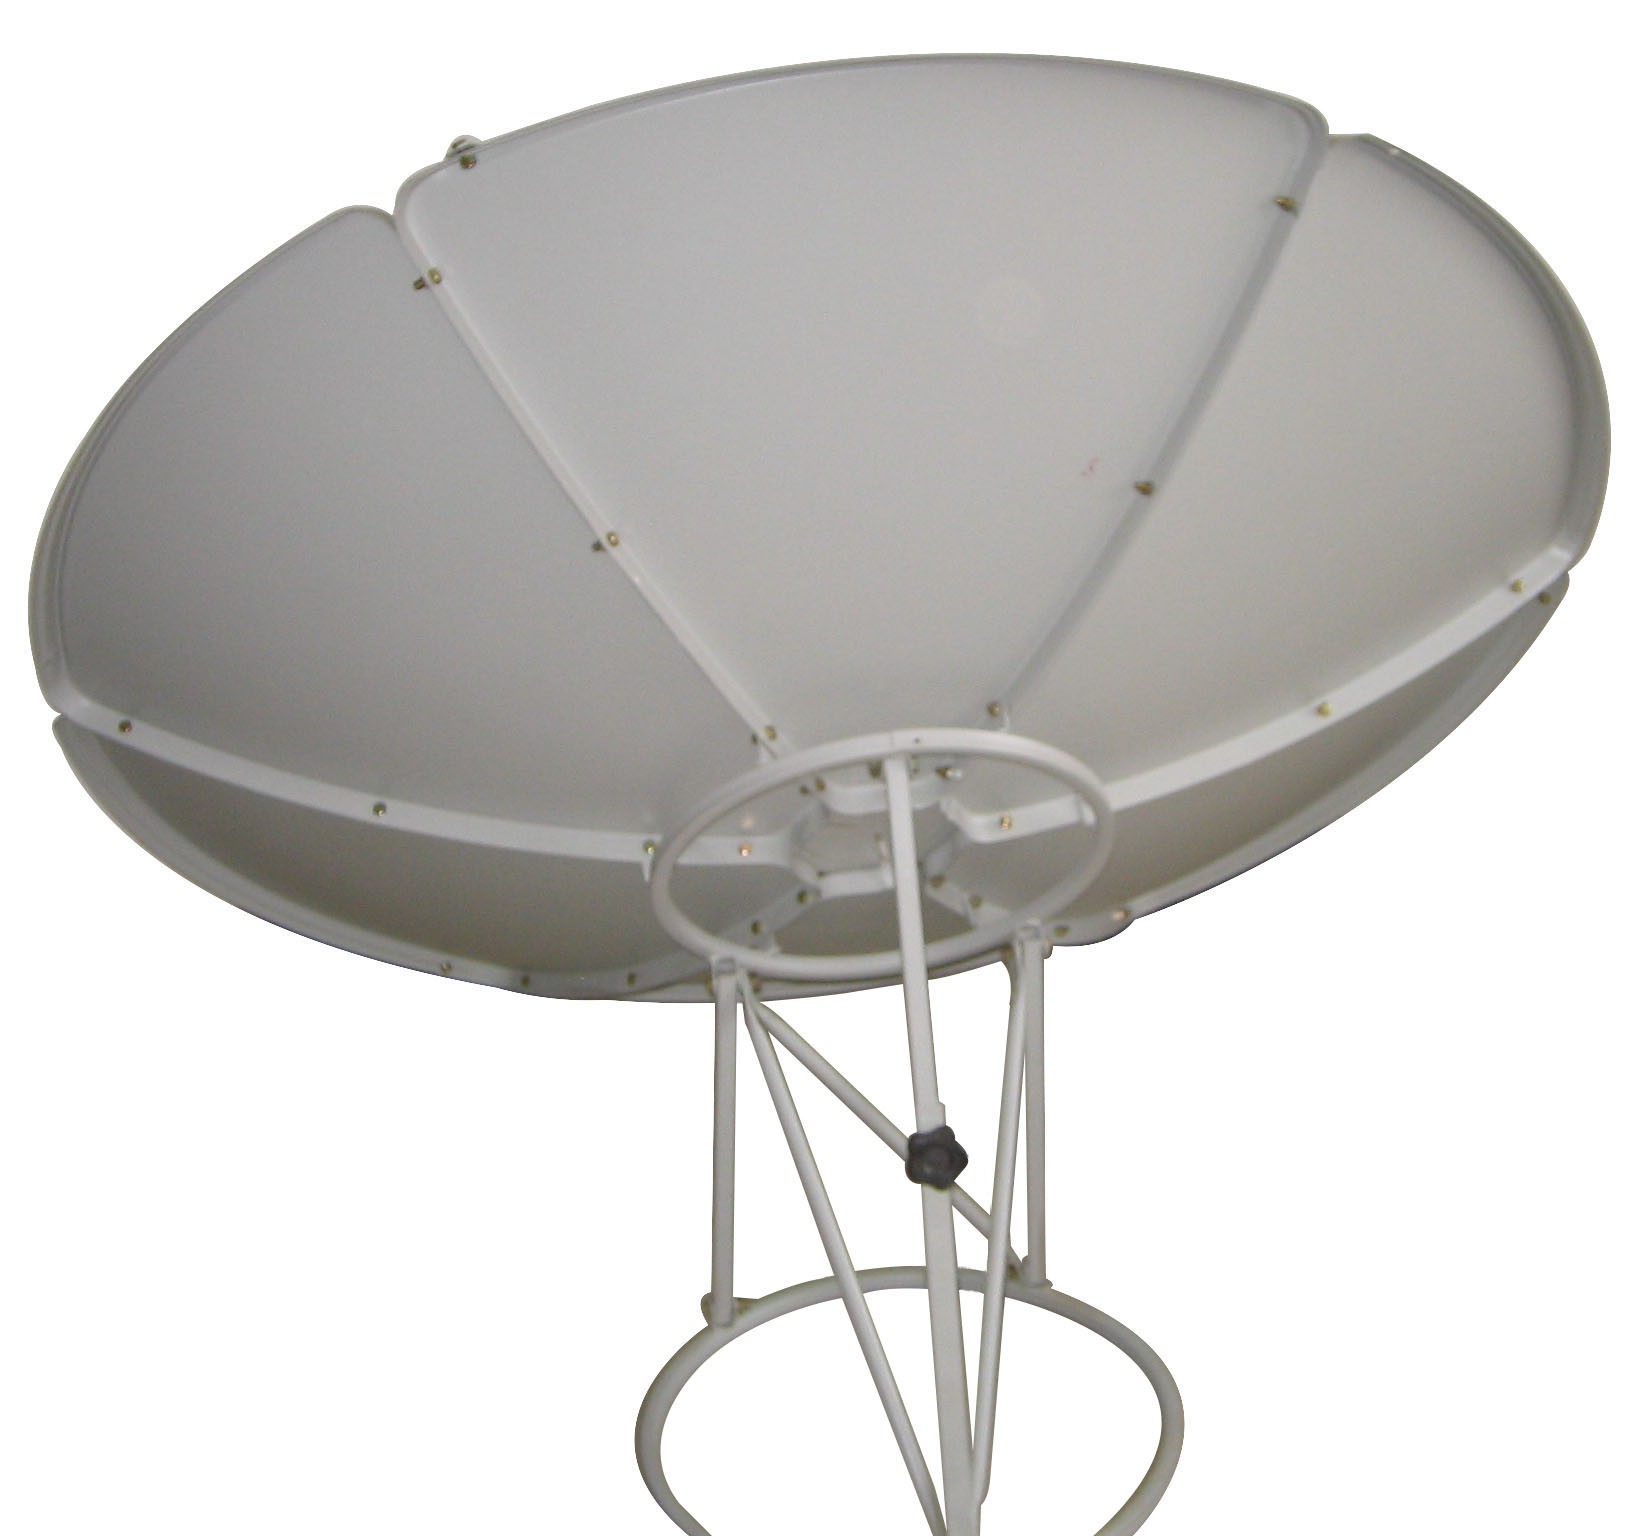 Antena parabólica de banda C de 150 cm, enfoque principal